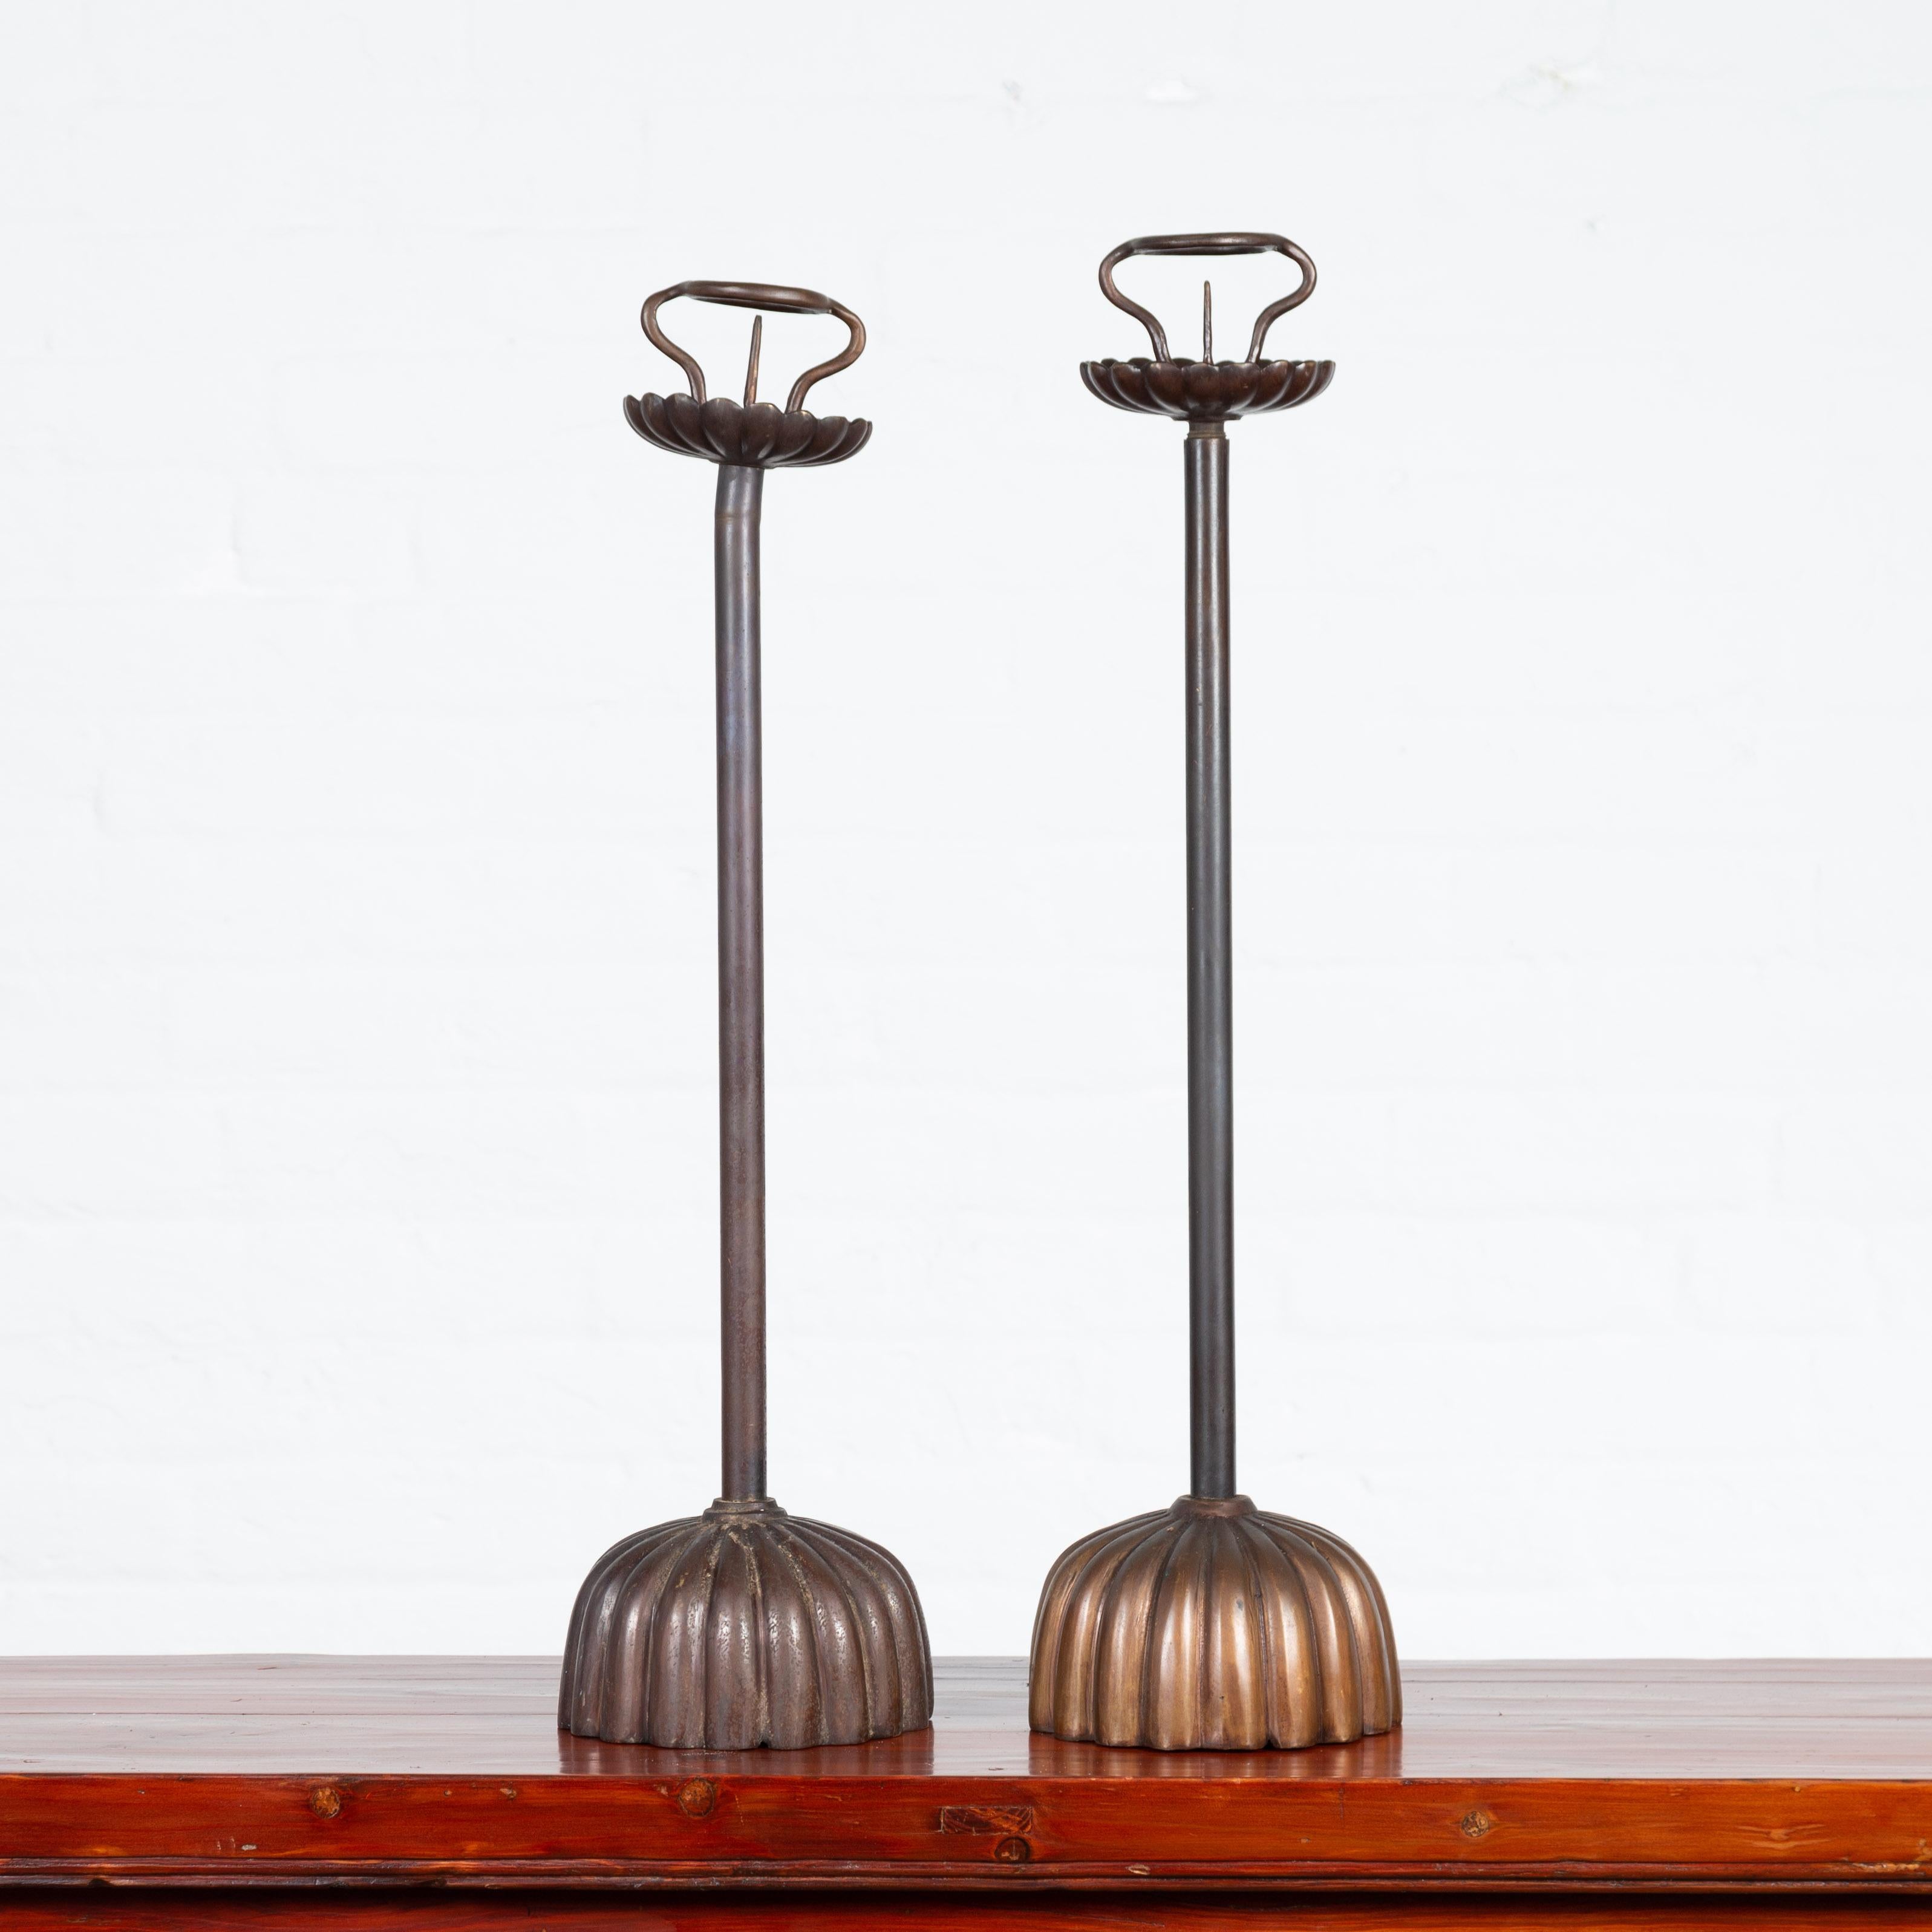 Une paire de chandeliers de style japonais en bronze coulé à la cire perdue avec des motifs de godrons. Nous avons actuellement deux paires disponibles, vendues 750 $ chacune. Créée selon la technique traditionnelle de la cire perdue, cette paire de